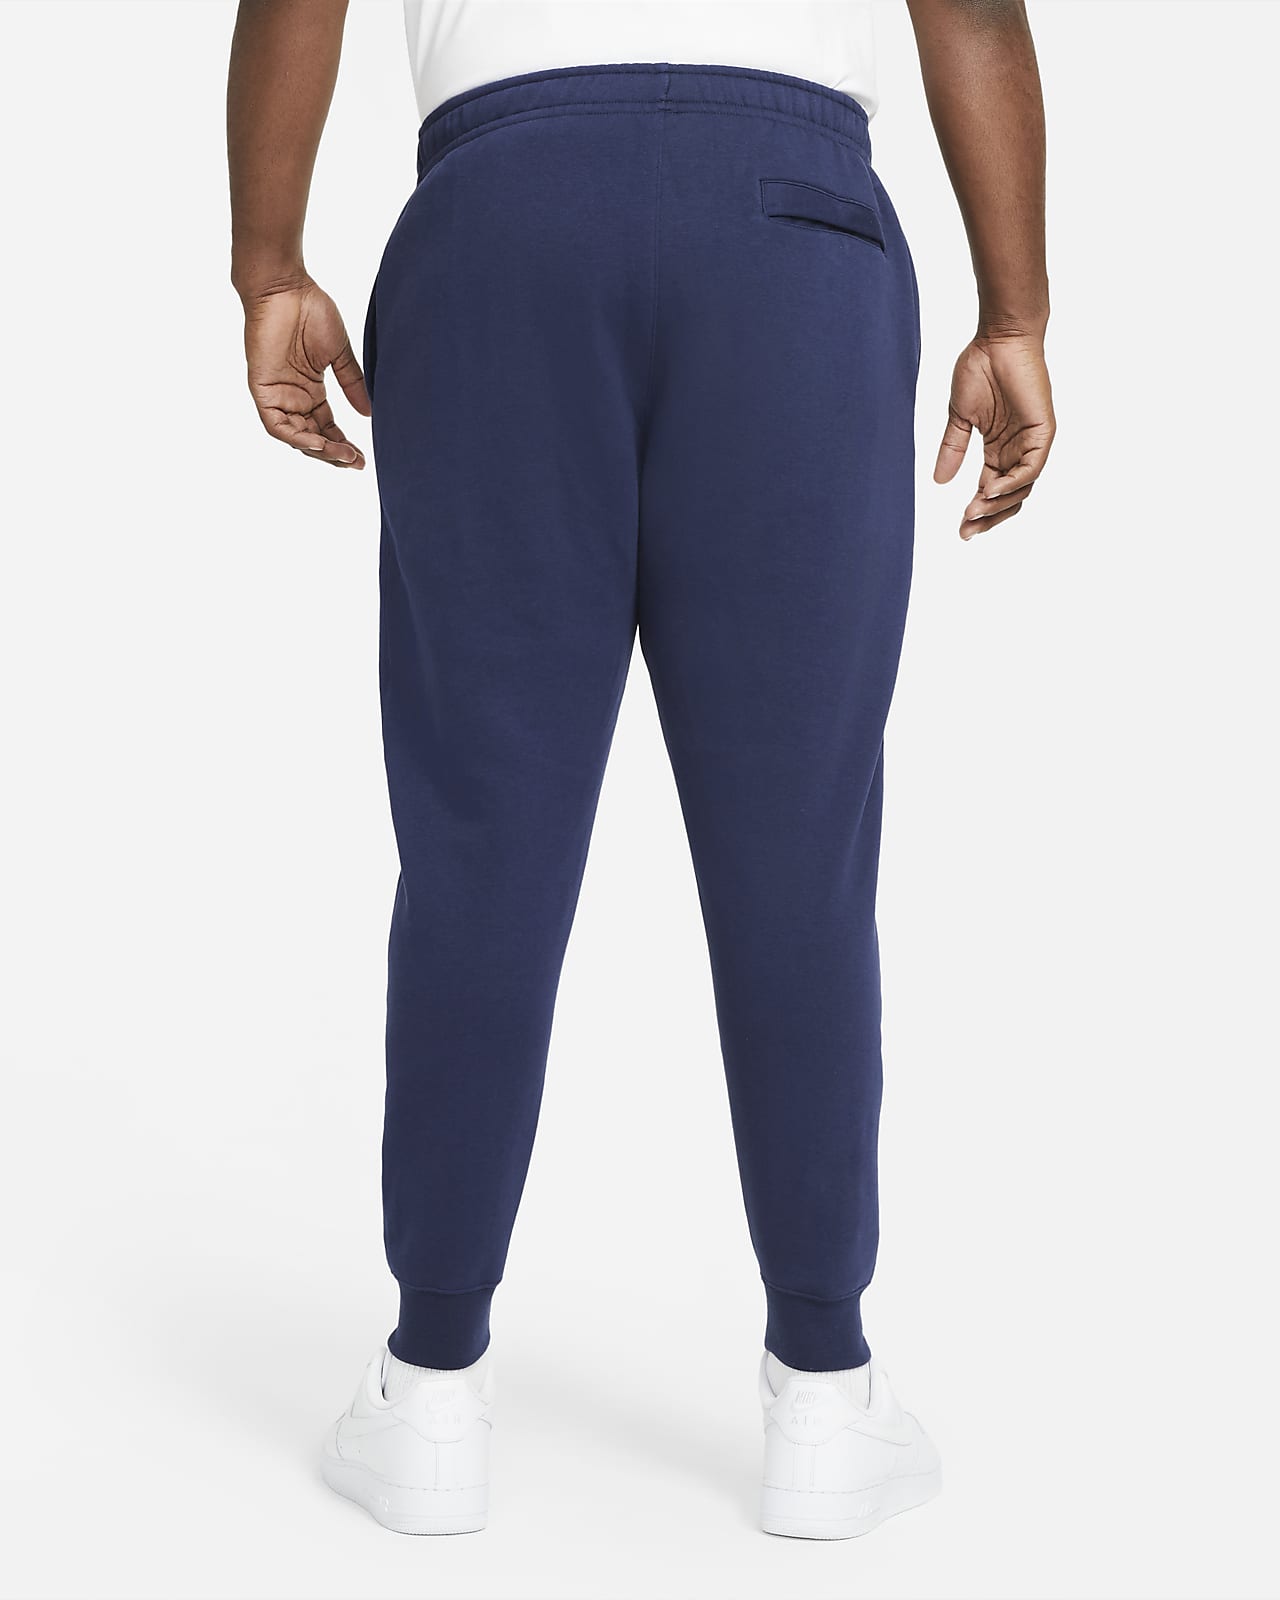 women's nike sportswear jogger pants